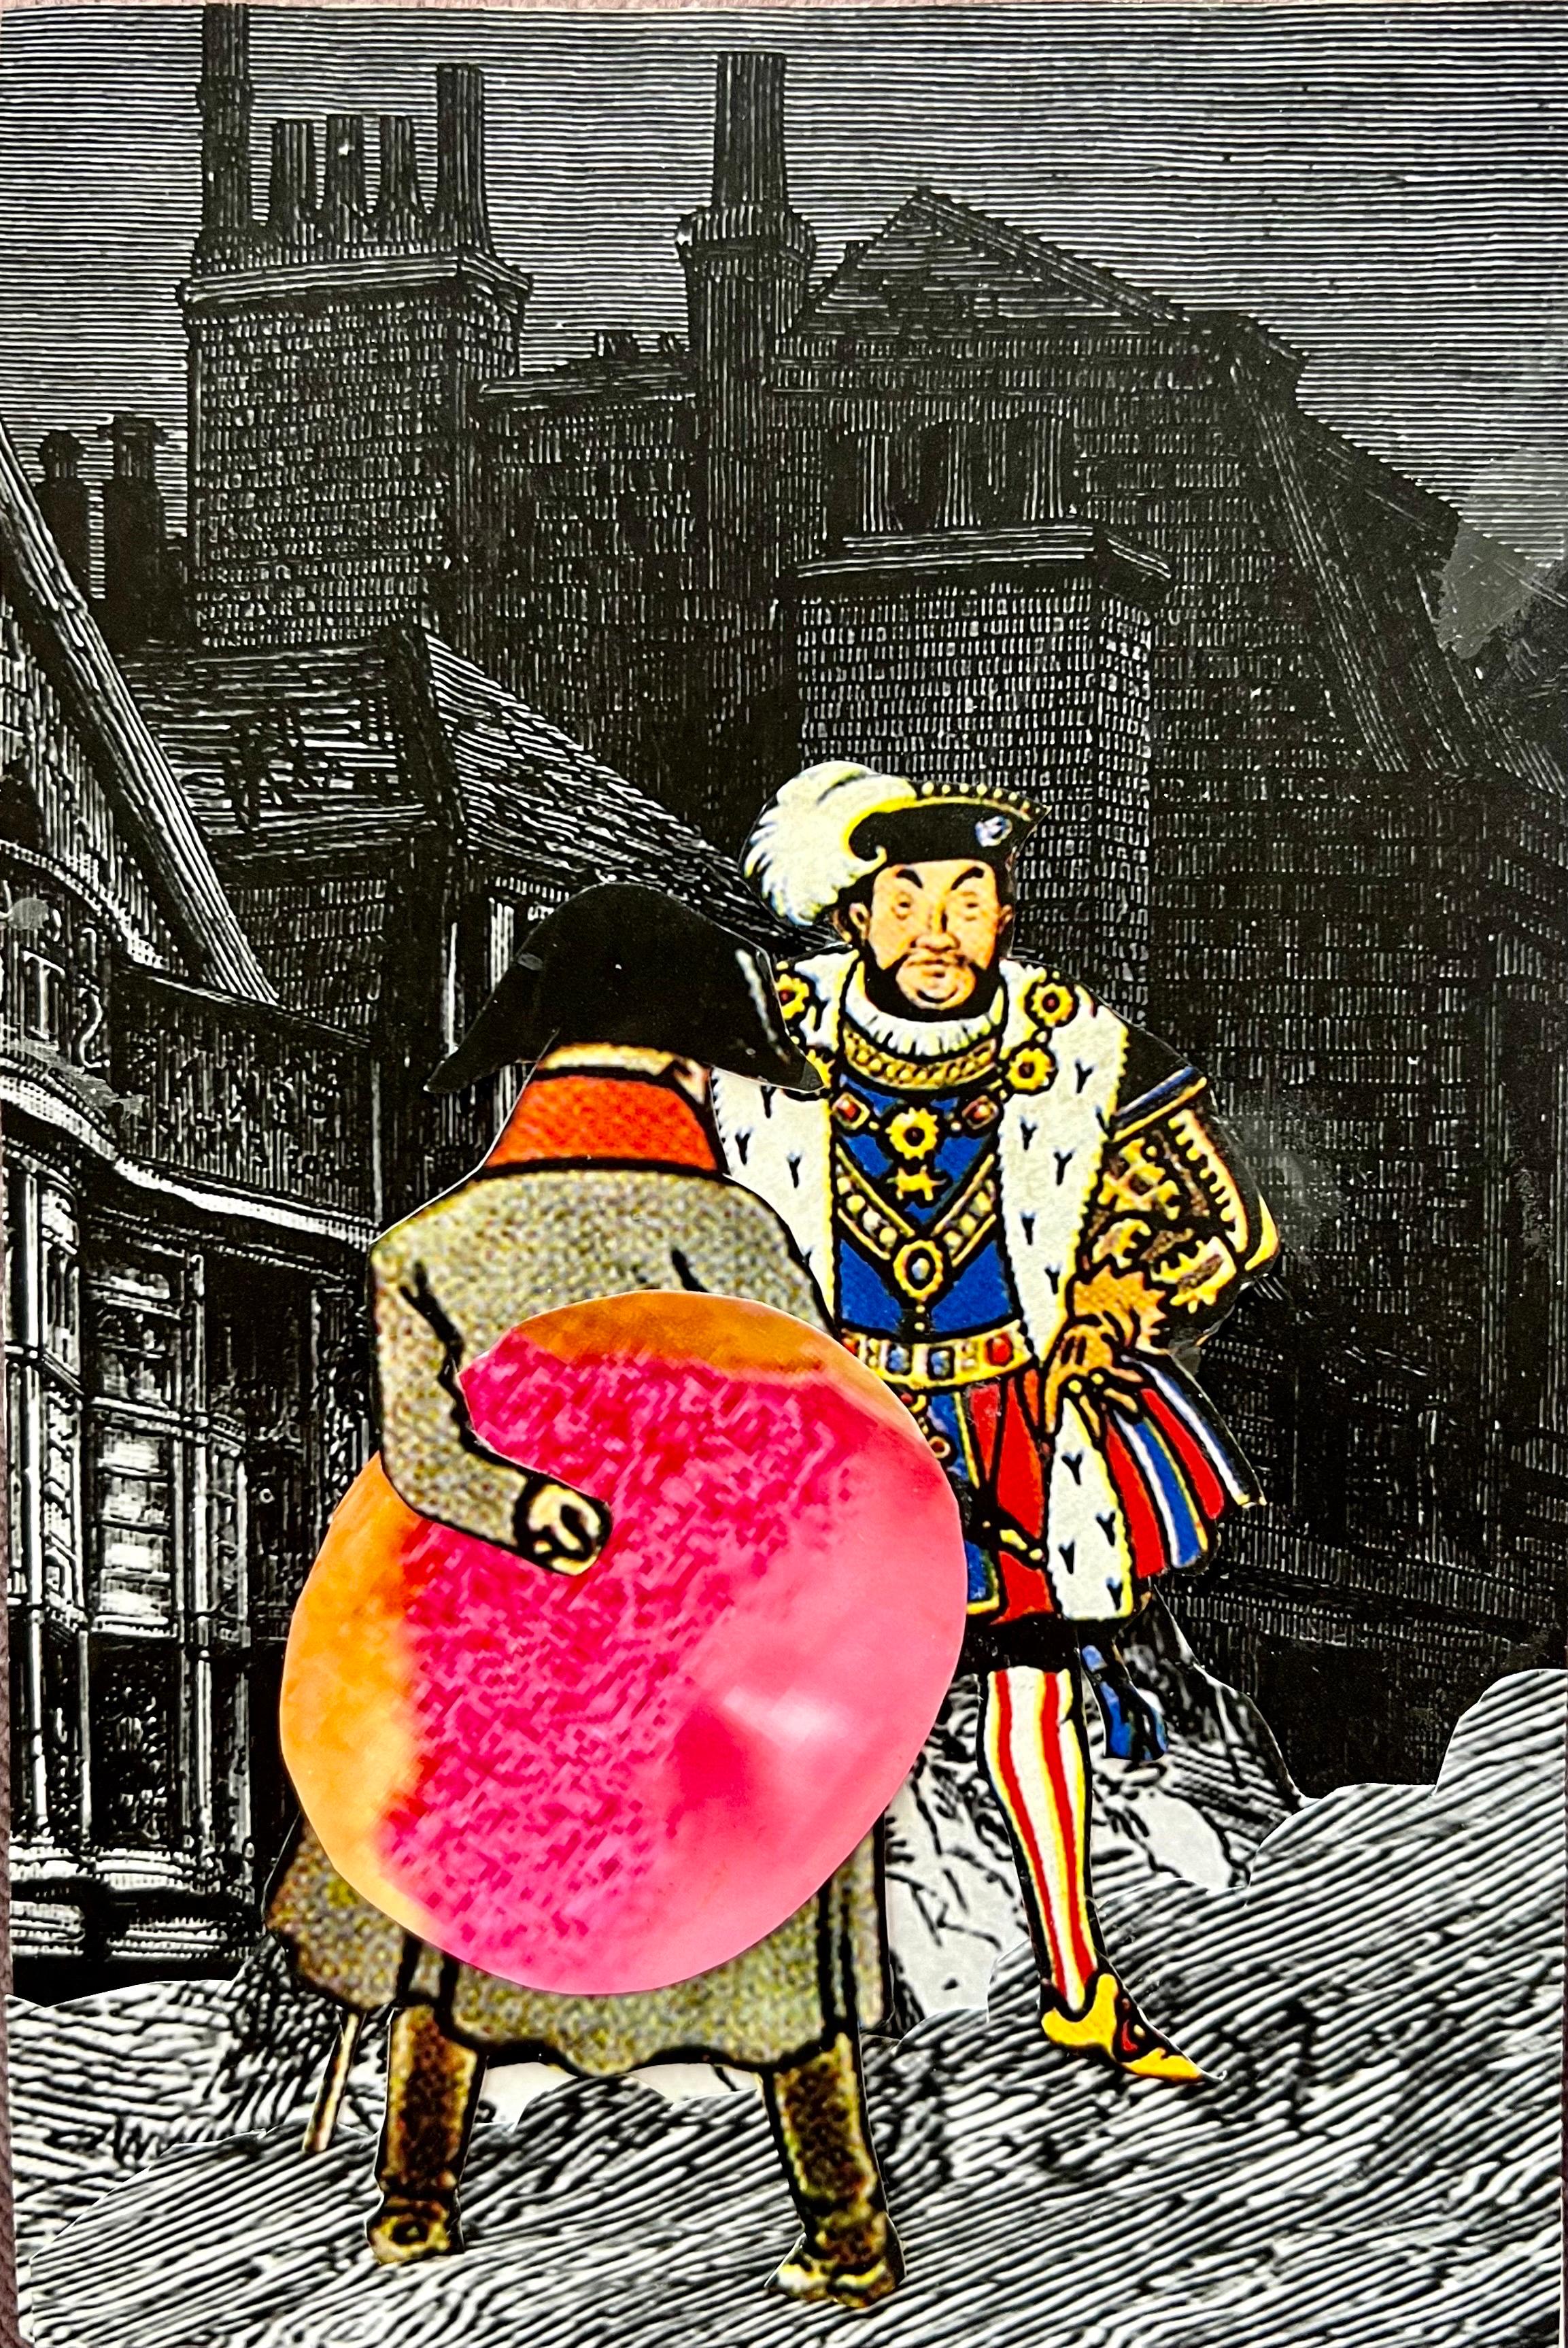 DAVID JAMES GILHOOLY (Amerikaner, 1943-2013), 
Gemischte Mediencollage
6 x 4 Zoll,  
Verso handsigniert und datiert
Napoleon von hinten, mit König Heinrich VIII., der ein Gebäck hält. 
mit dem Titel: "England kann nicht von ein paar französischen